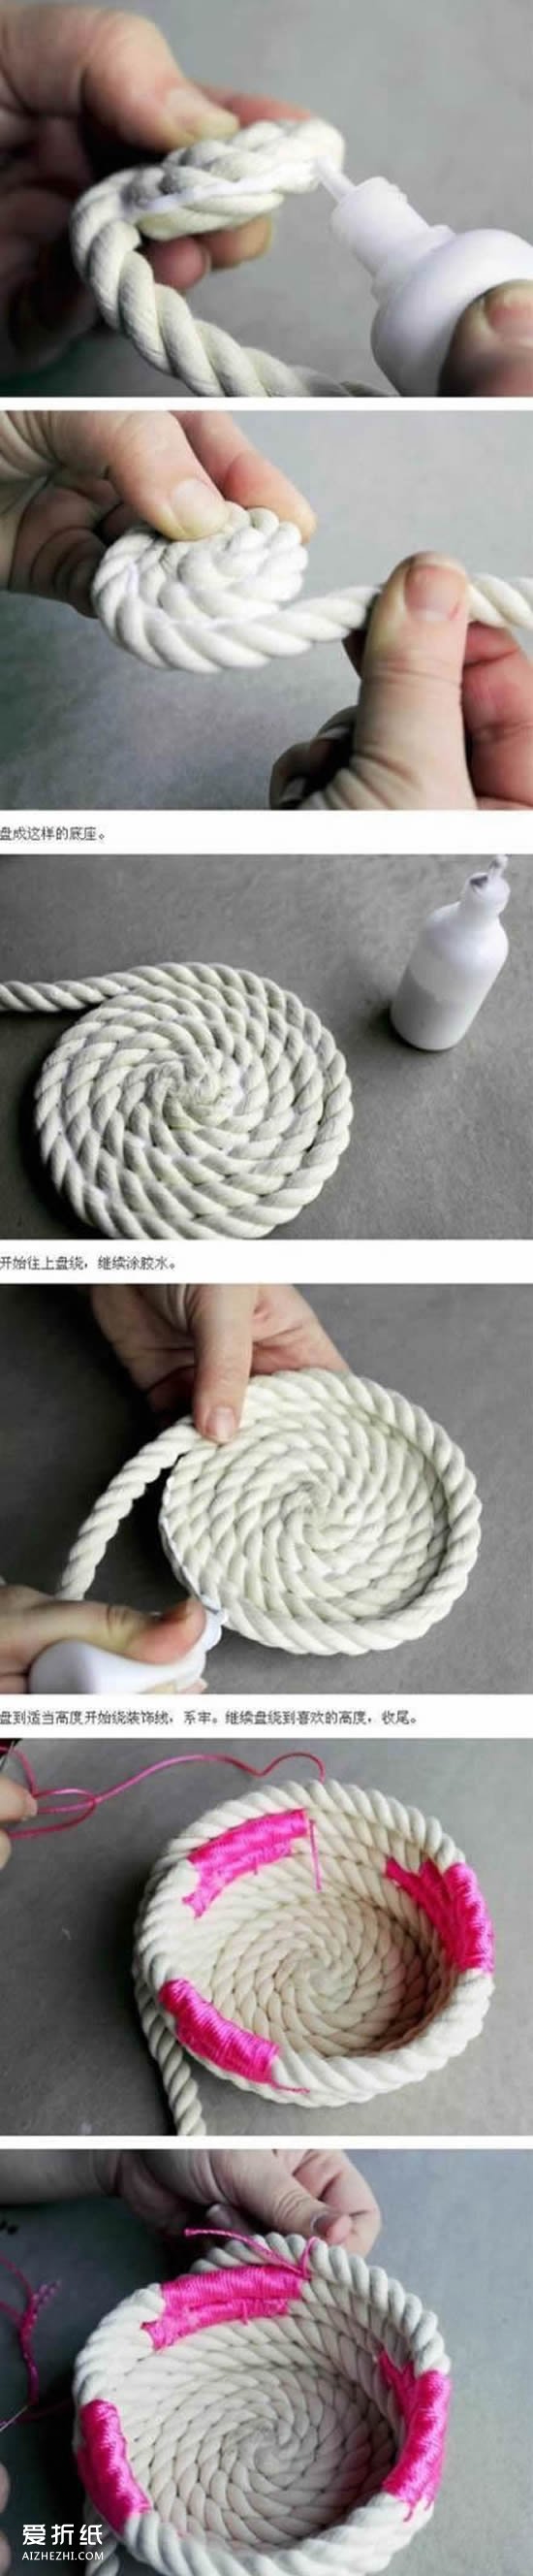 麻绳收纳筒怎么做 麻绳手工制作收纳筒的方法- www.aizhezhi.com